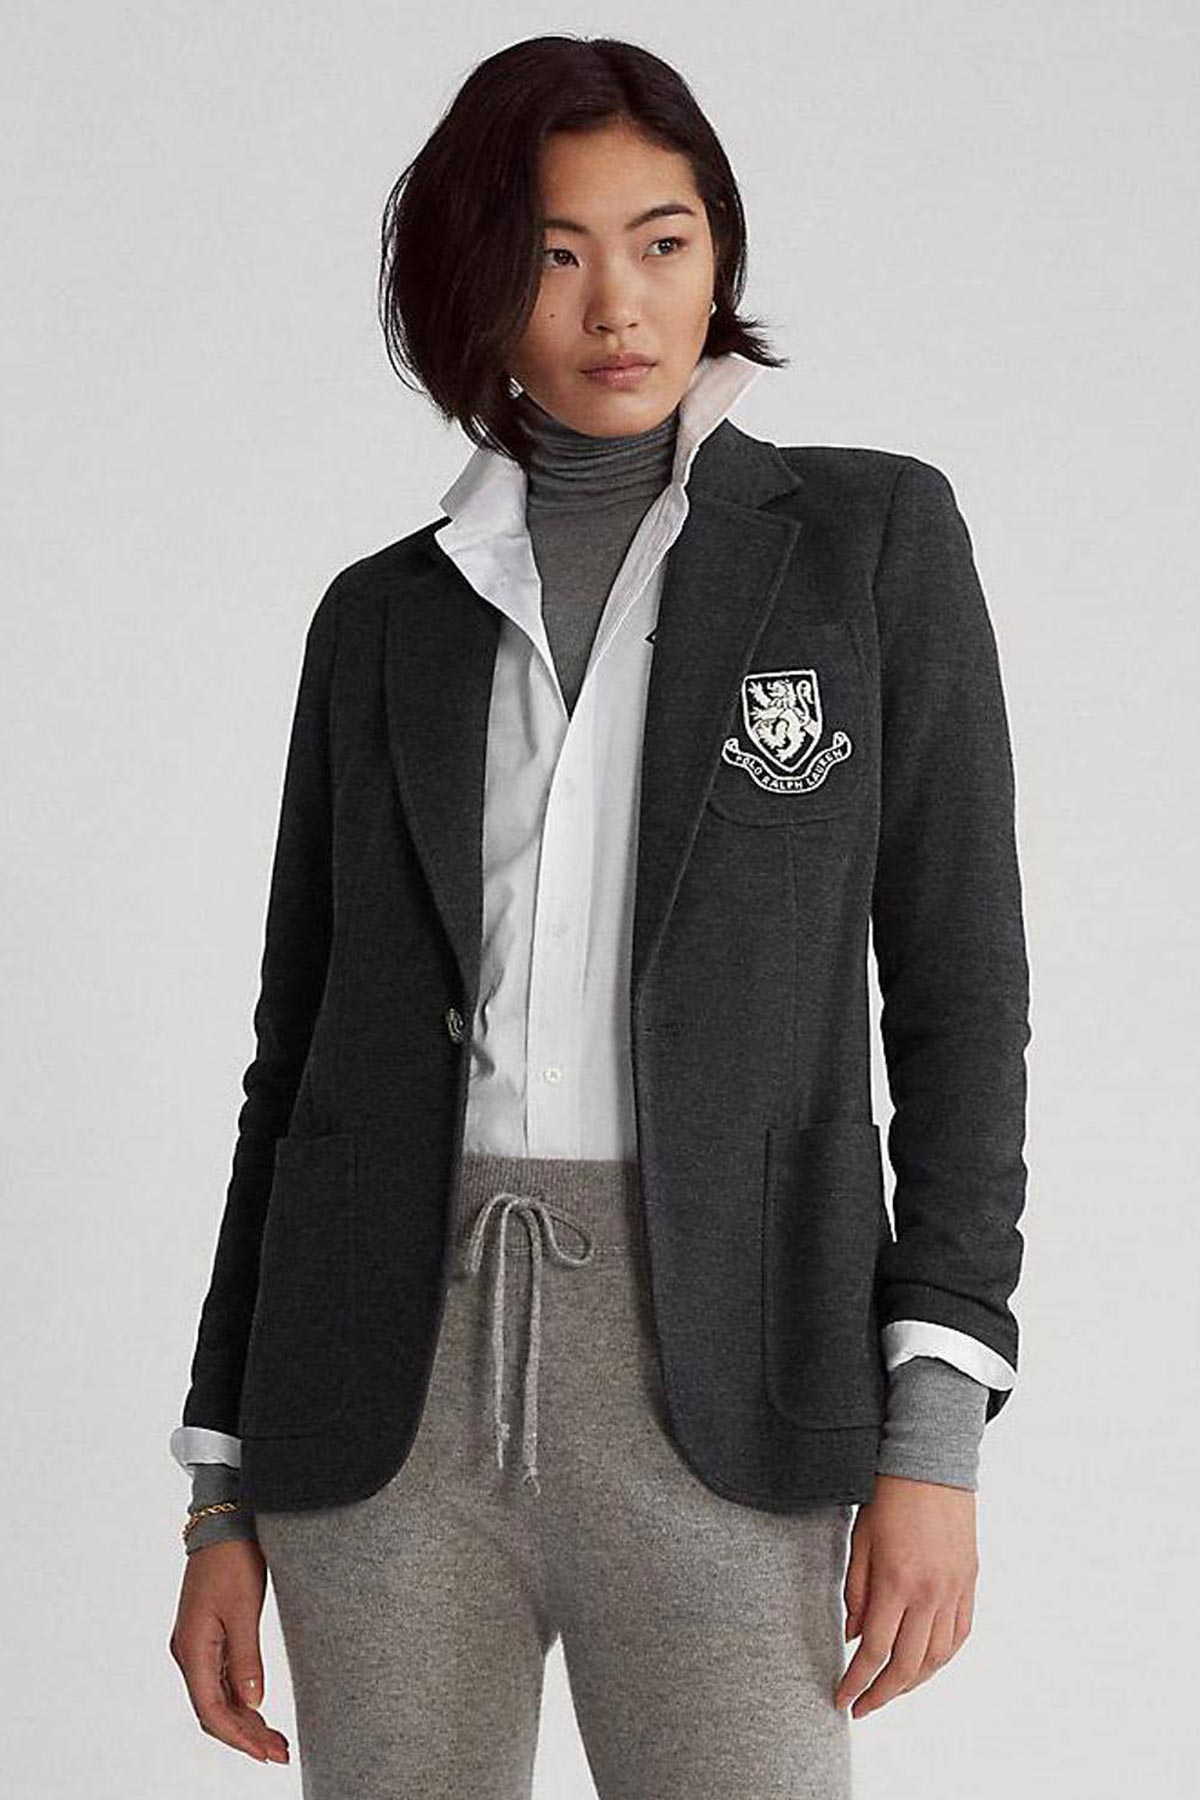 Polo Ralph Lauren Spor Cepli Armalı Ceket-Libas Trendy Fashion Store